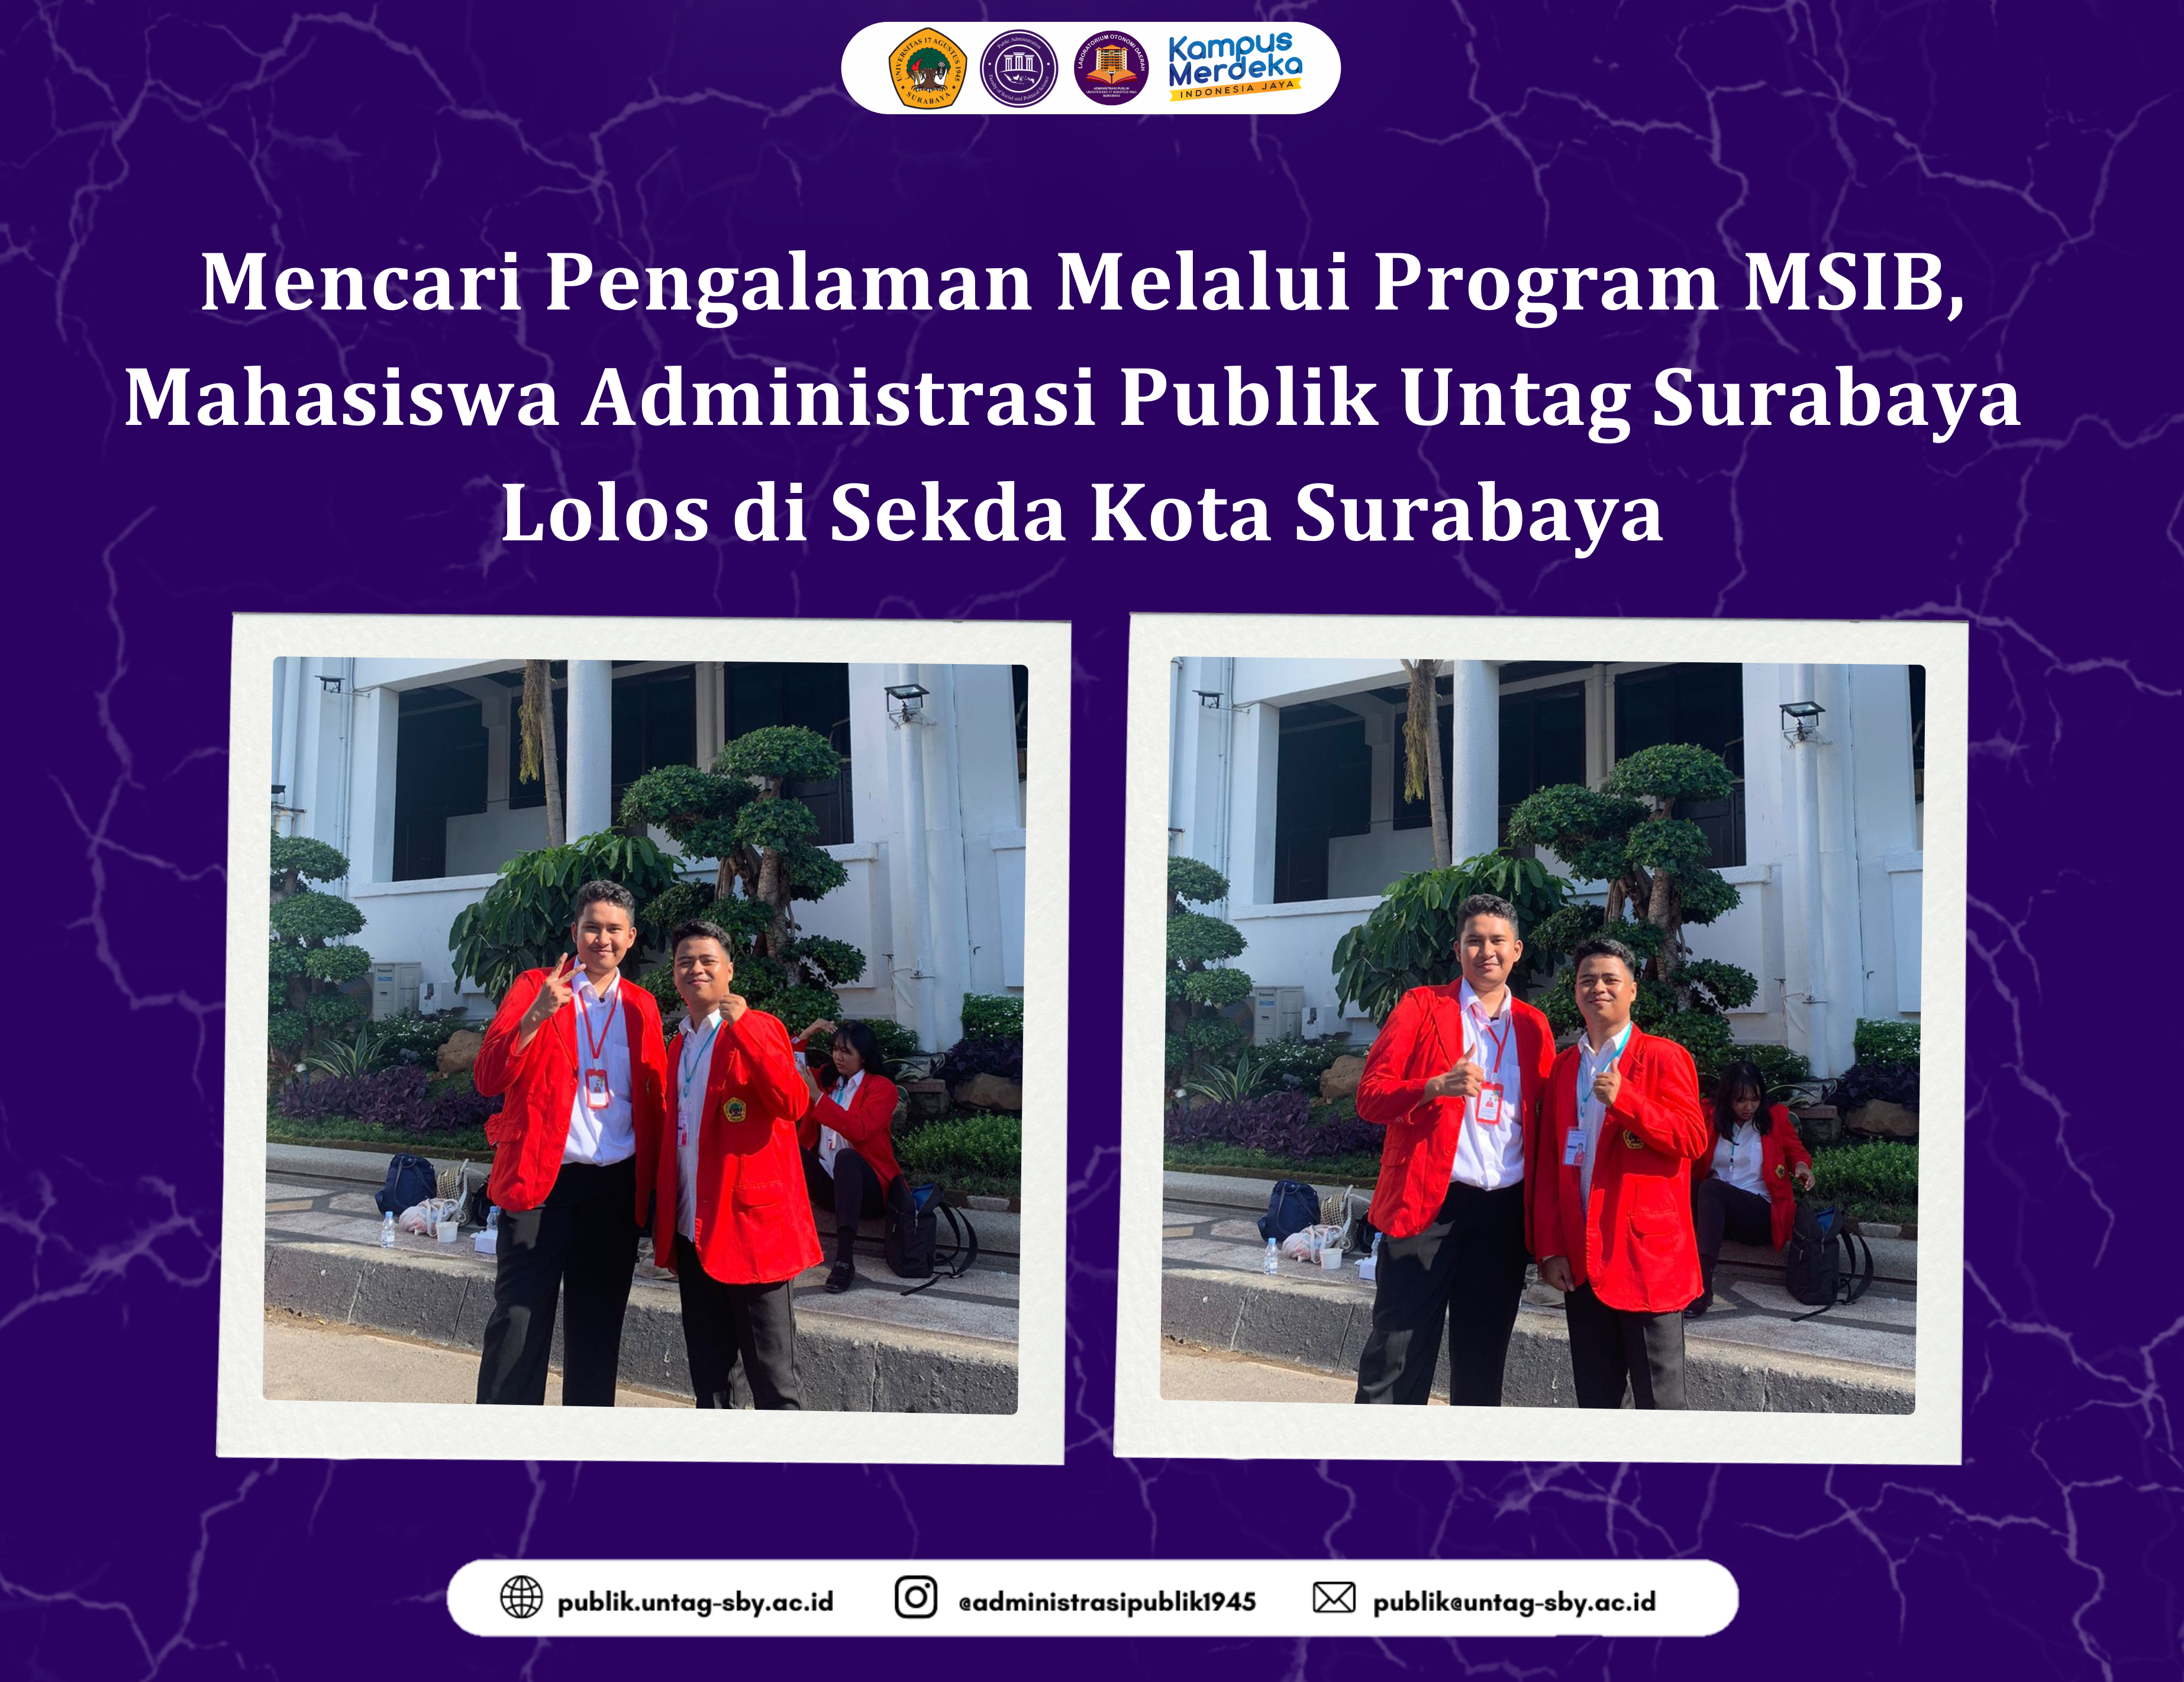 Mahasiswa Administrasi Publik Untag Surabaya Lolos di Sekda Kota Surabaya